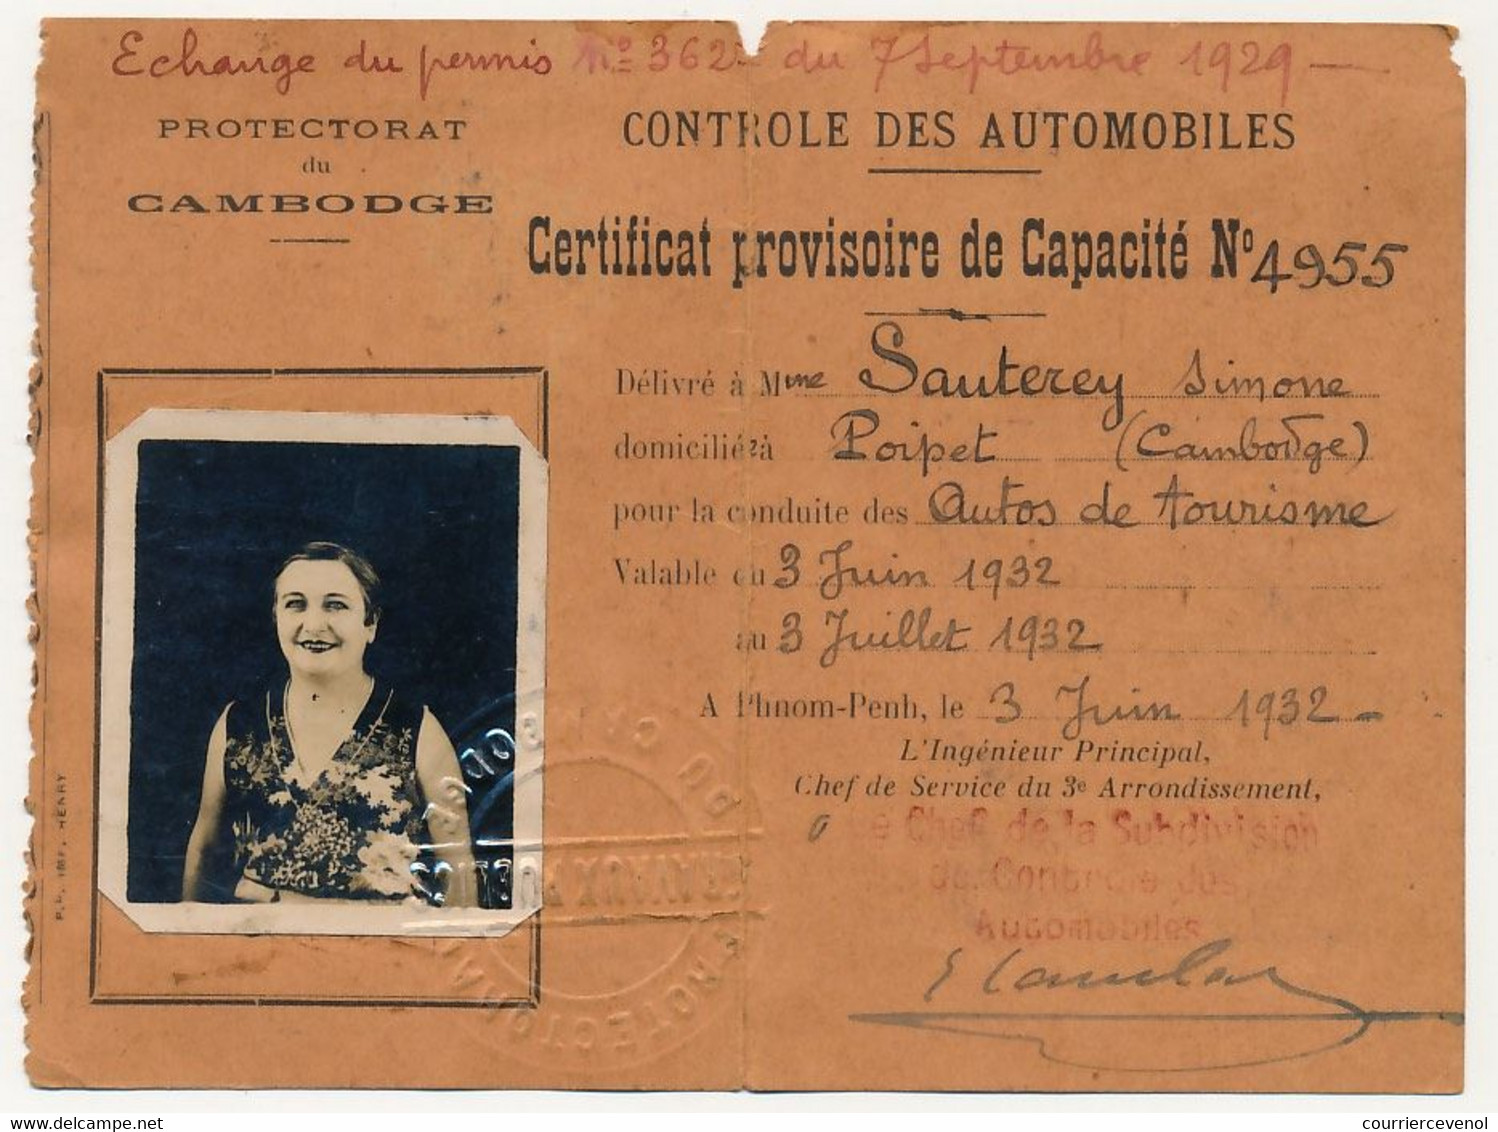 CAMBODGE (Protectorat) - Contrôle Des Automobiles - Certificat Provisoire De Capacité N°4955 - 1932 - Documents Historiques